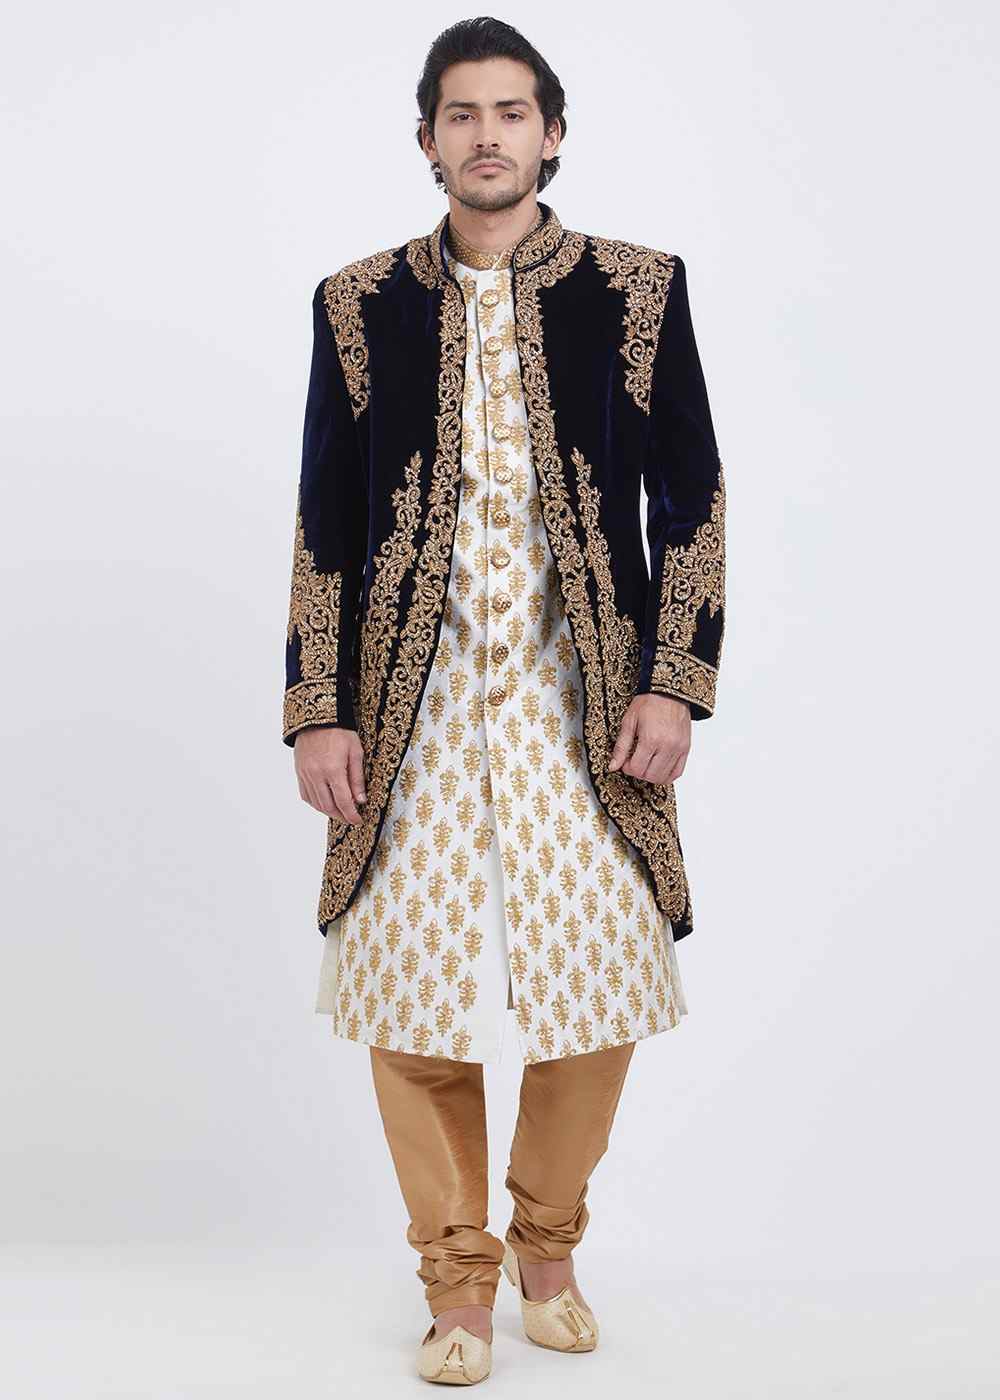 Latest Jacket Style Embroidered Black Velvet Indo Western Wedding Sherwani - Ethnic World